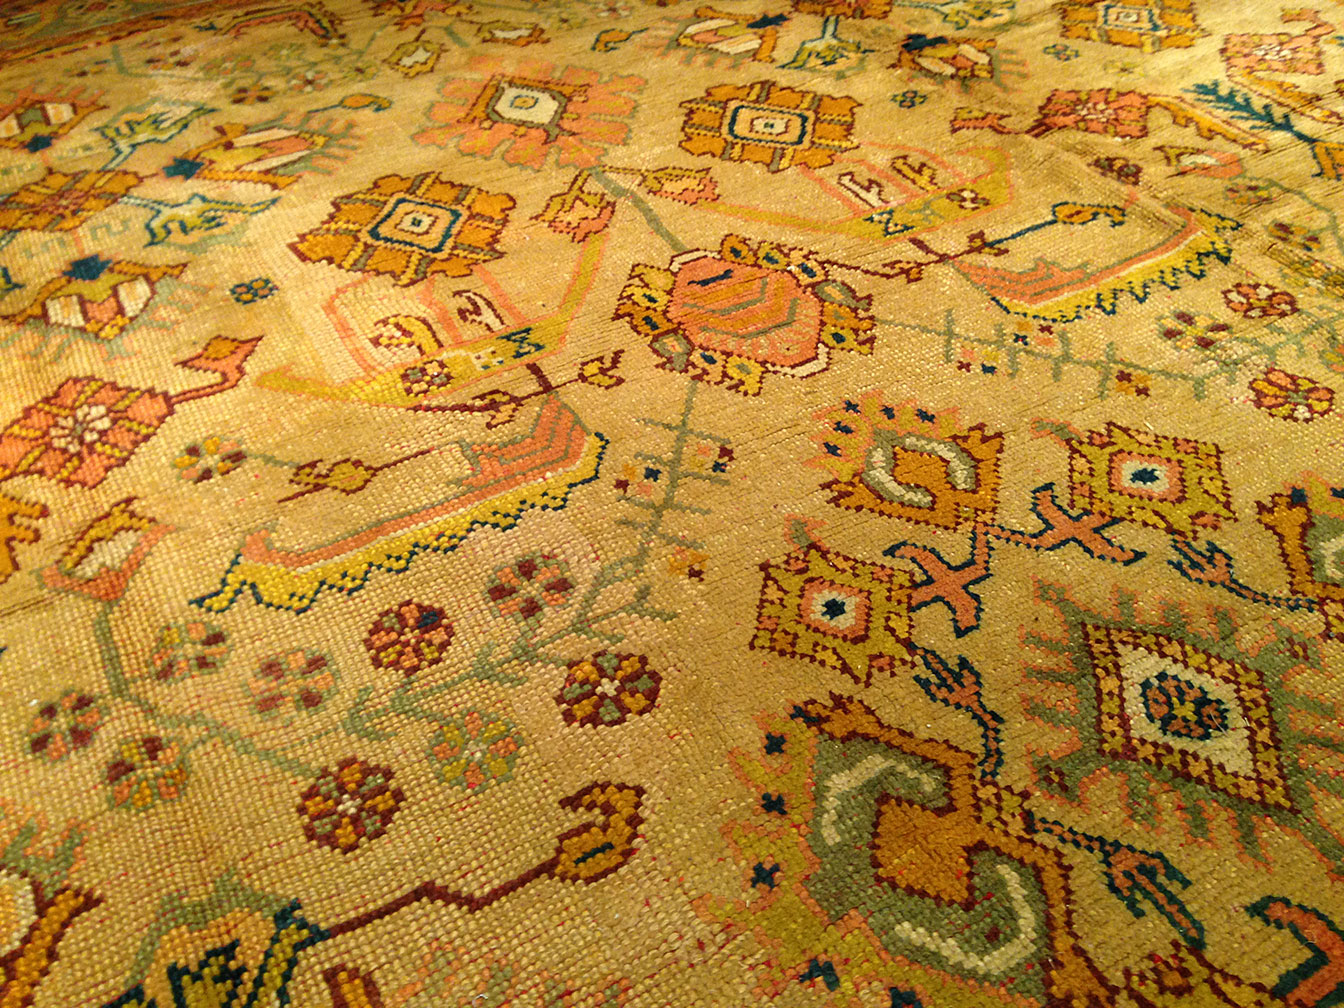 Antique oushak Carpet - # 50052